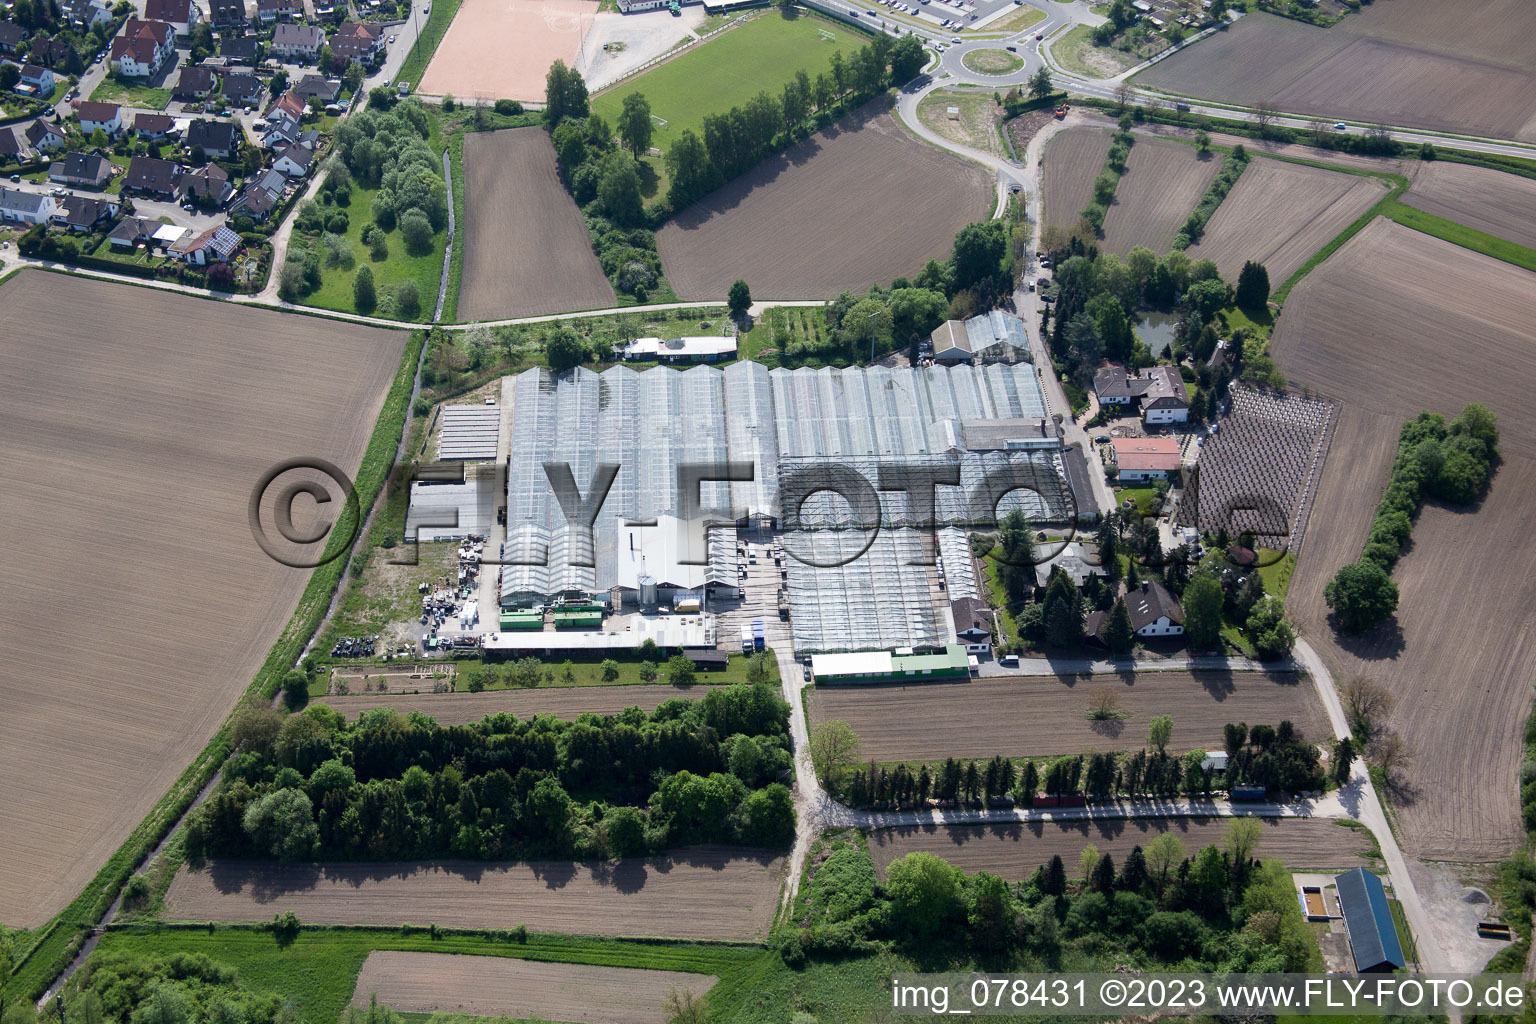 Hagenbach im Bundesland Rheinland-Pfalz, Deutschland aus der Drohnenperspektive